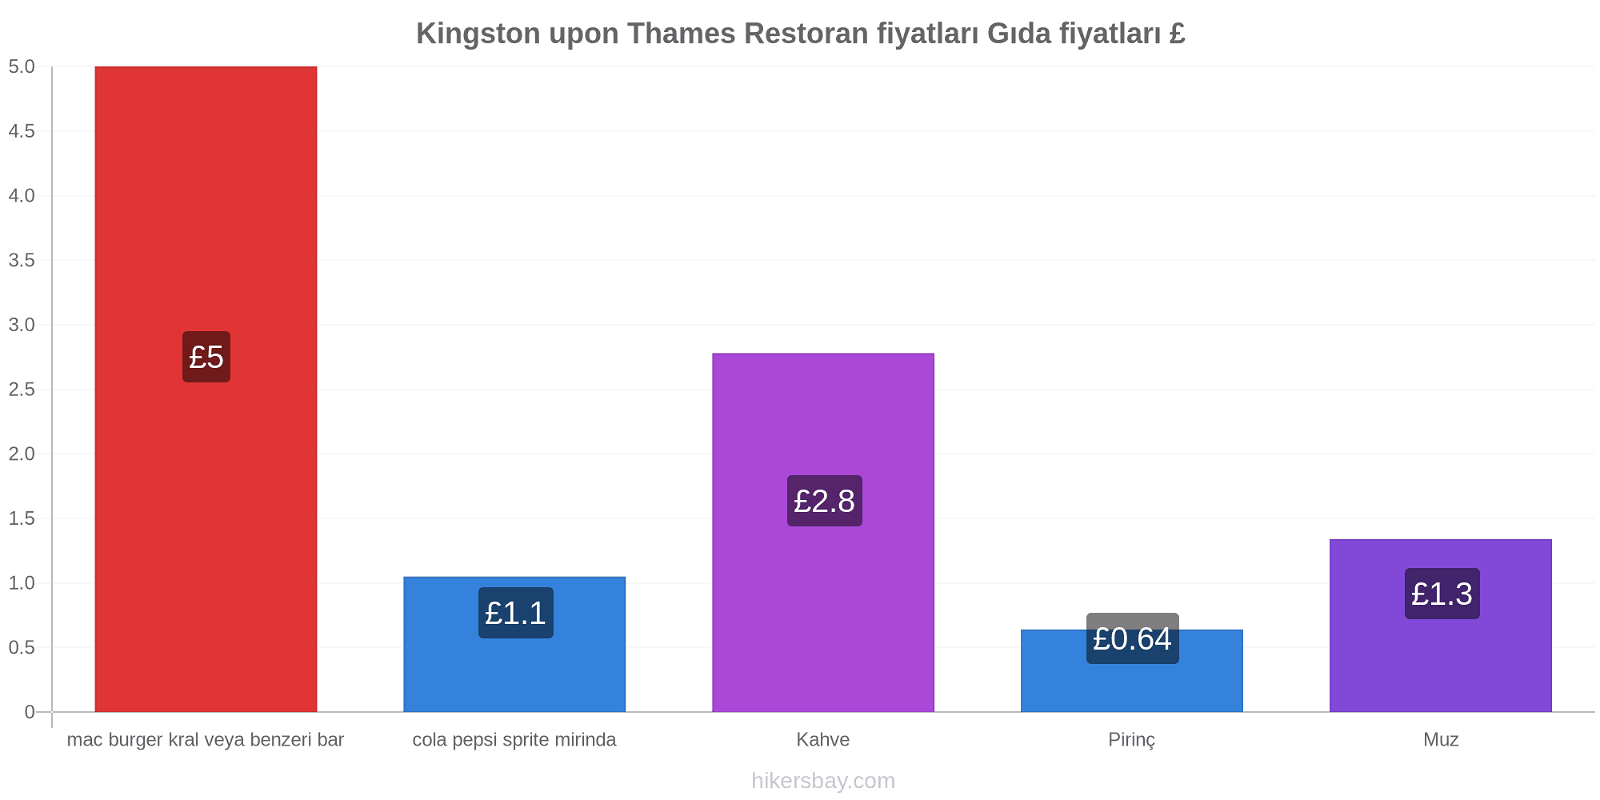 Kingston upon Thames fiyat değişiklikleri hikersbay.com